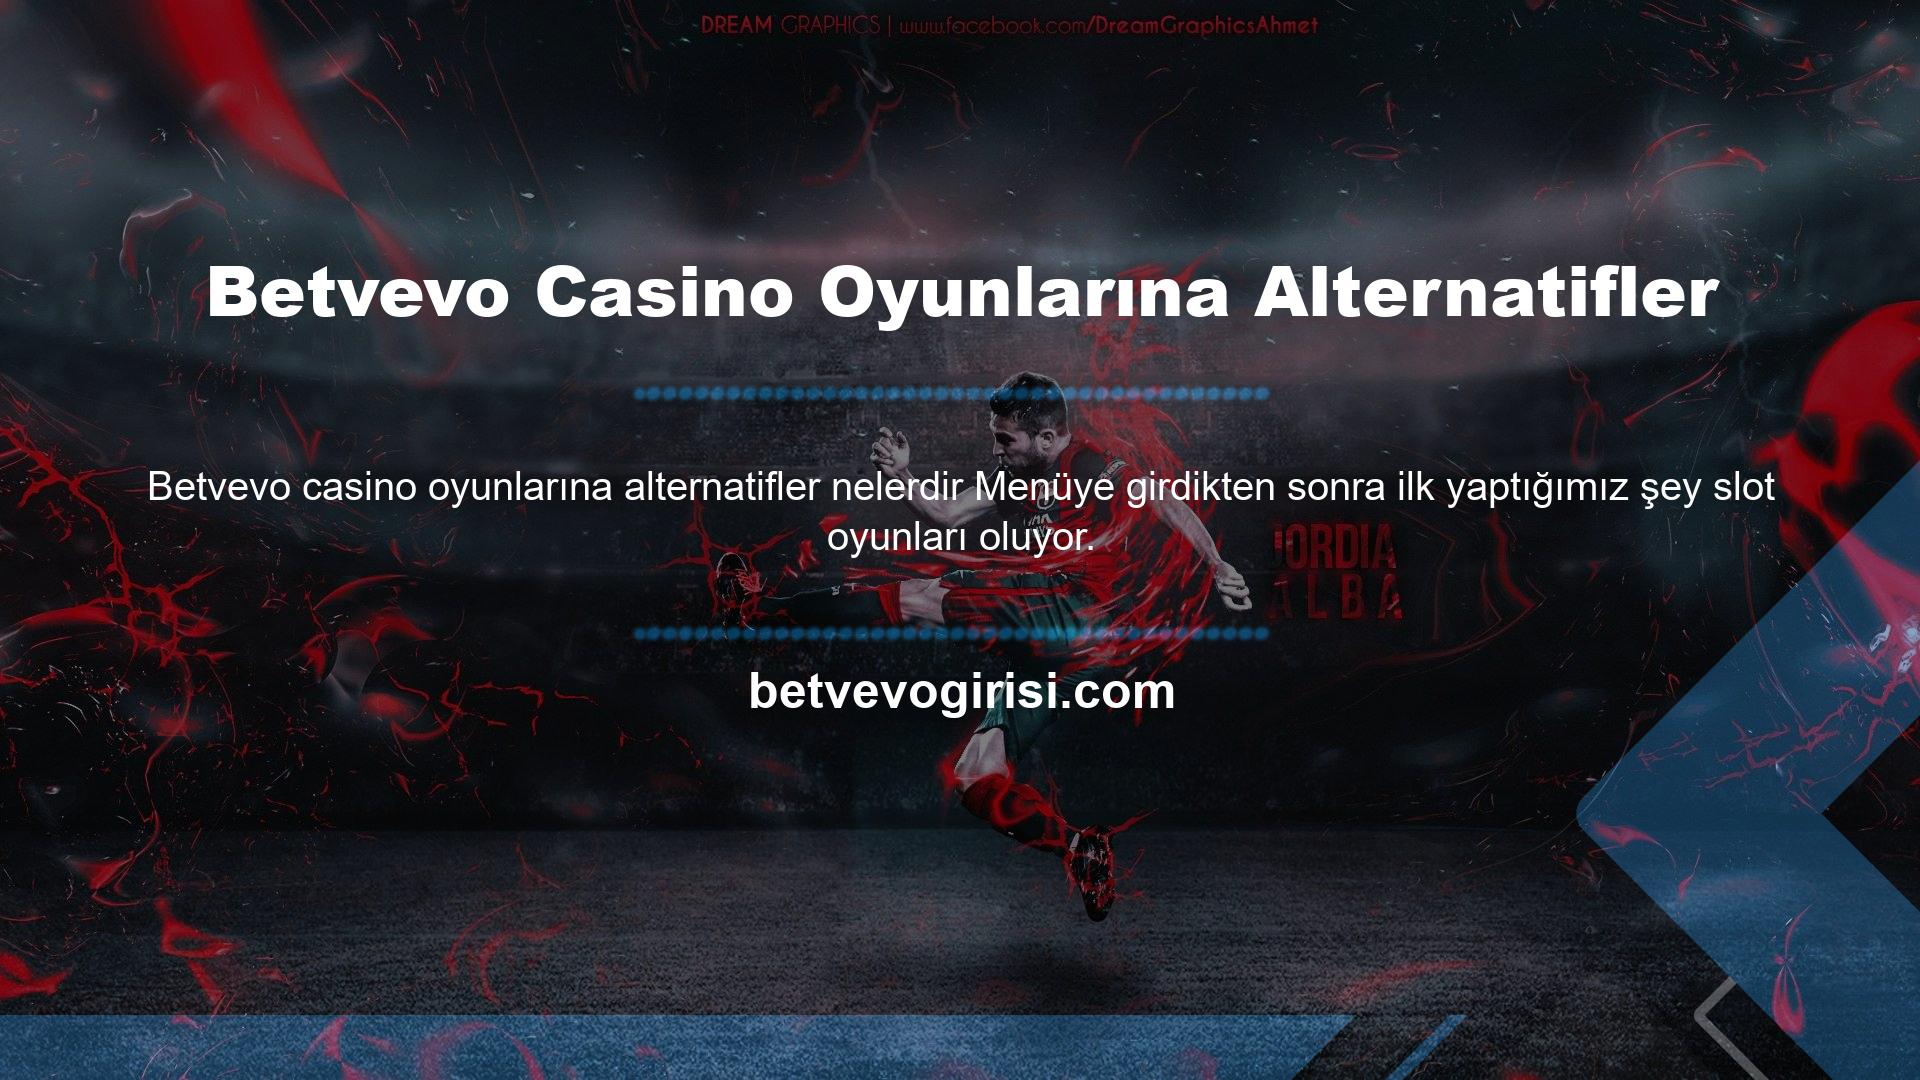 Betvevo canlı oyun siteleri kategorisinde sunduğu mini oyunlar, rulet ve poker alternatifleri ile üyeleri tarafından beğenilmektedir